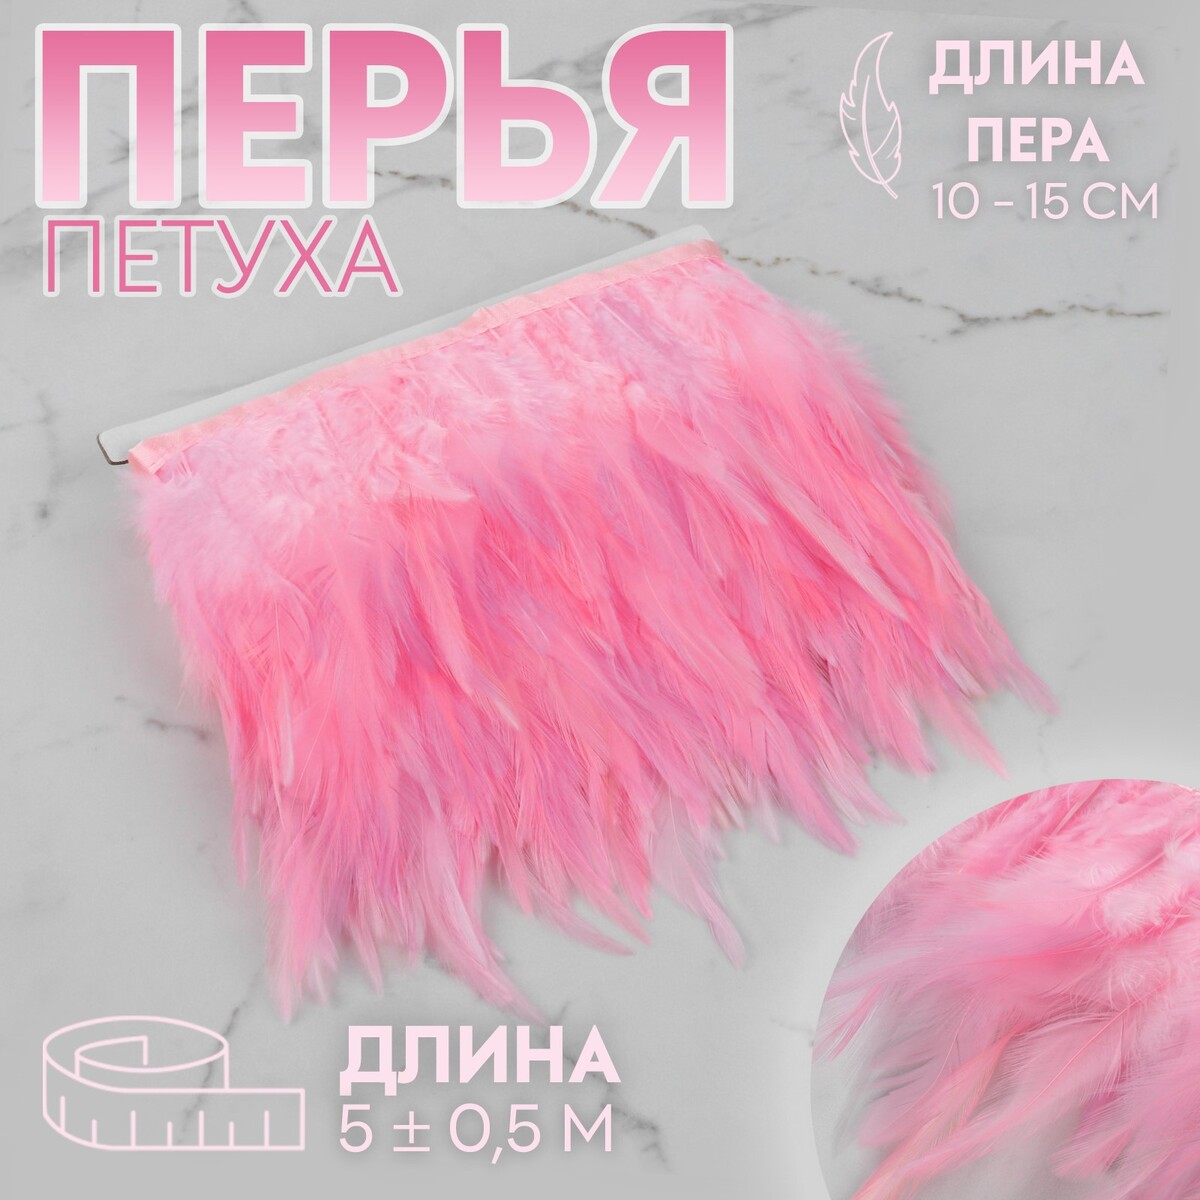 Тесьма с перьями петуха, 10-15 см, 5 ± 0,5 м, цвет розовый шар погремушка сизалевый с перьями 4 5 см розовый